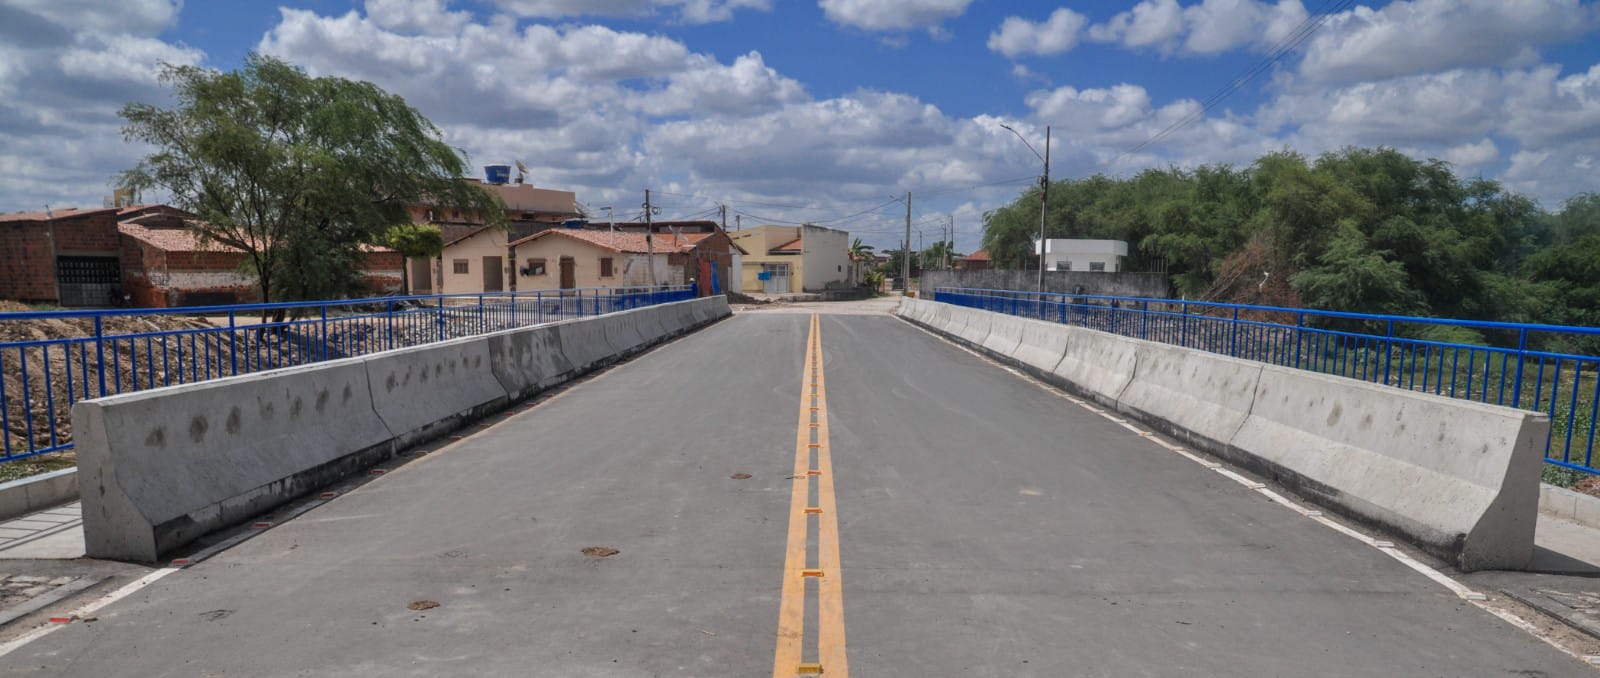 Prefeitura de Mossoró entrega ponte da Ilha de Santa Luzia nesta segunda-feira